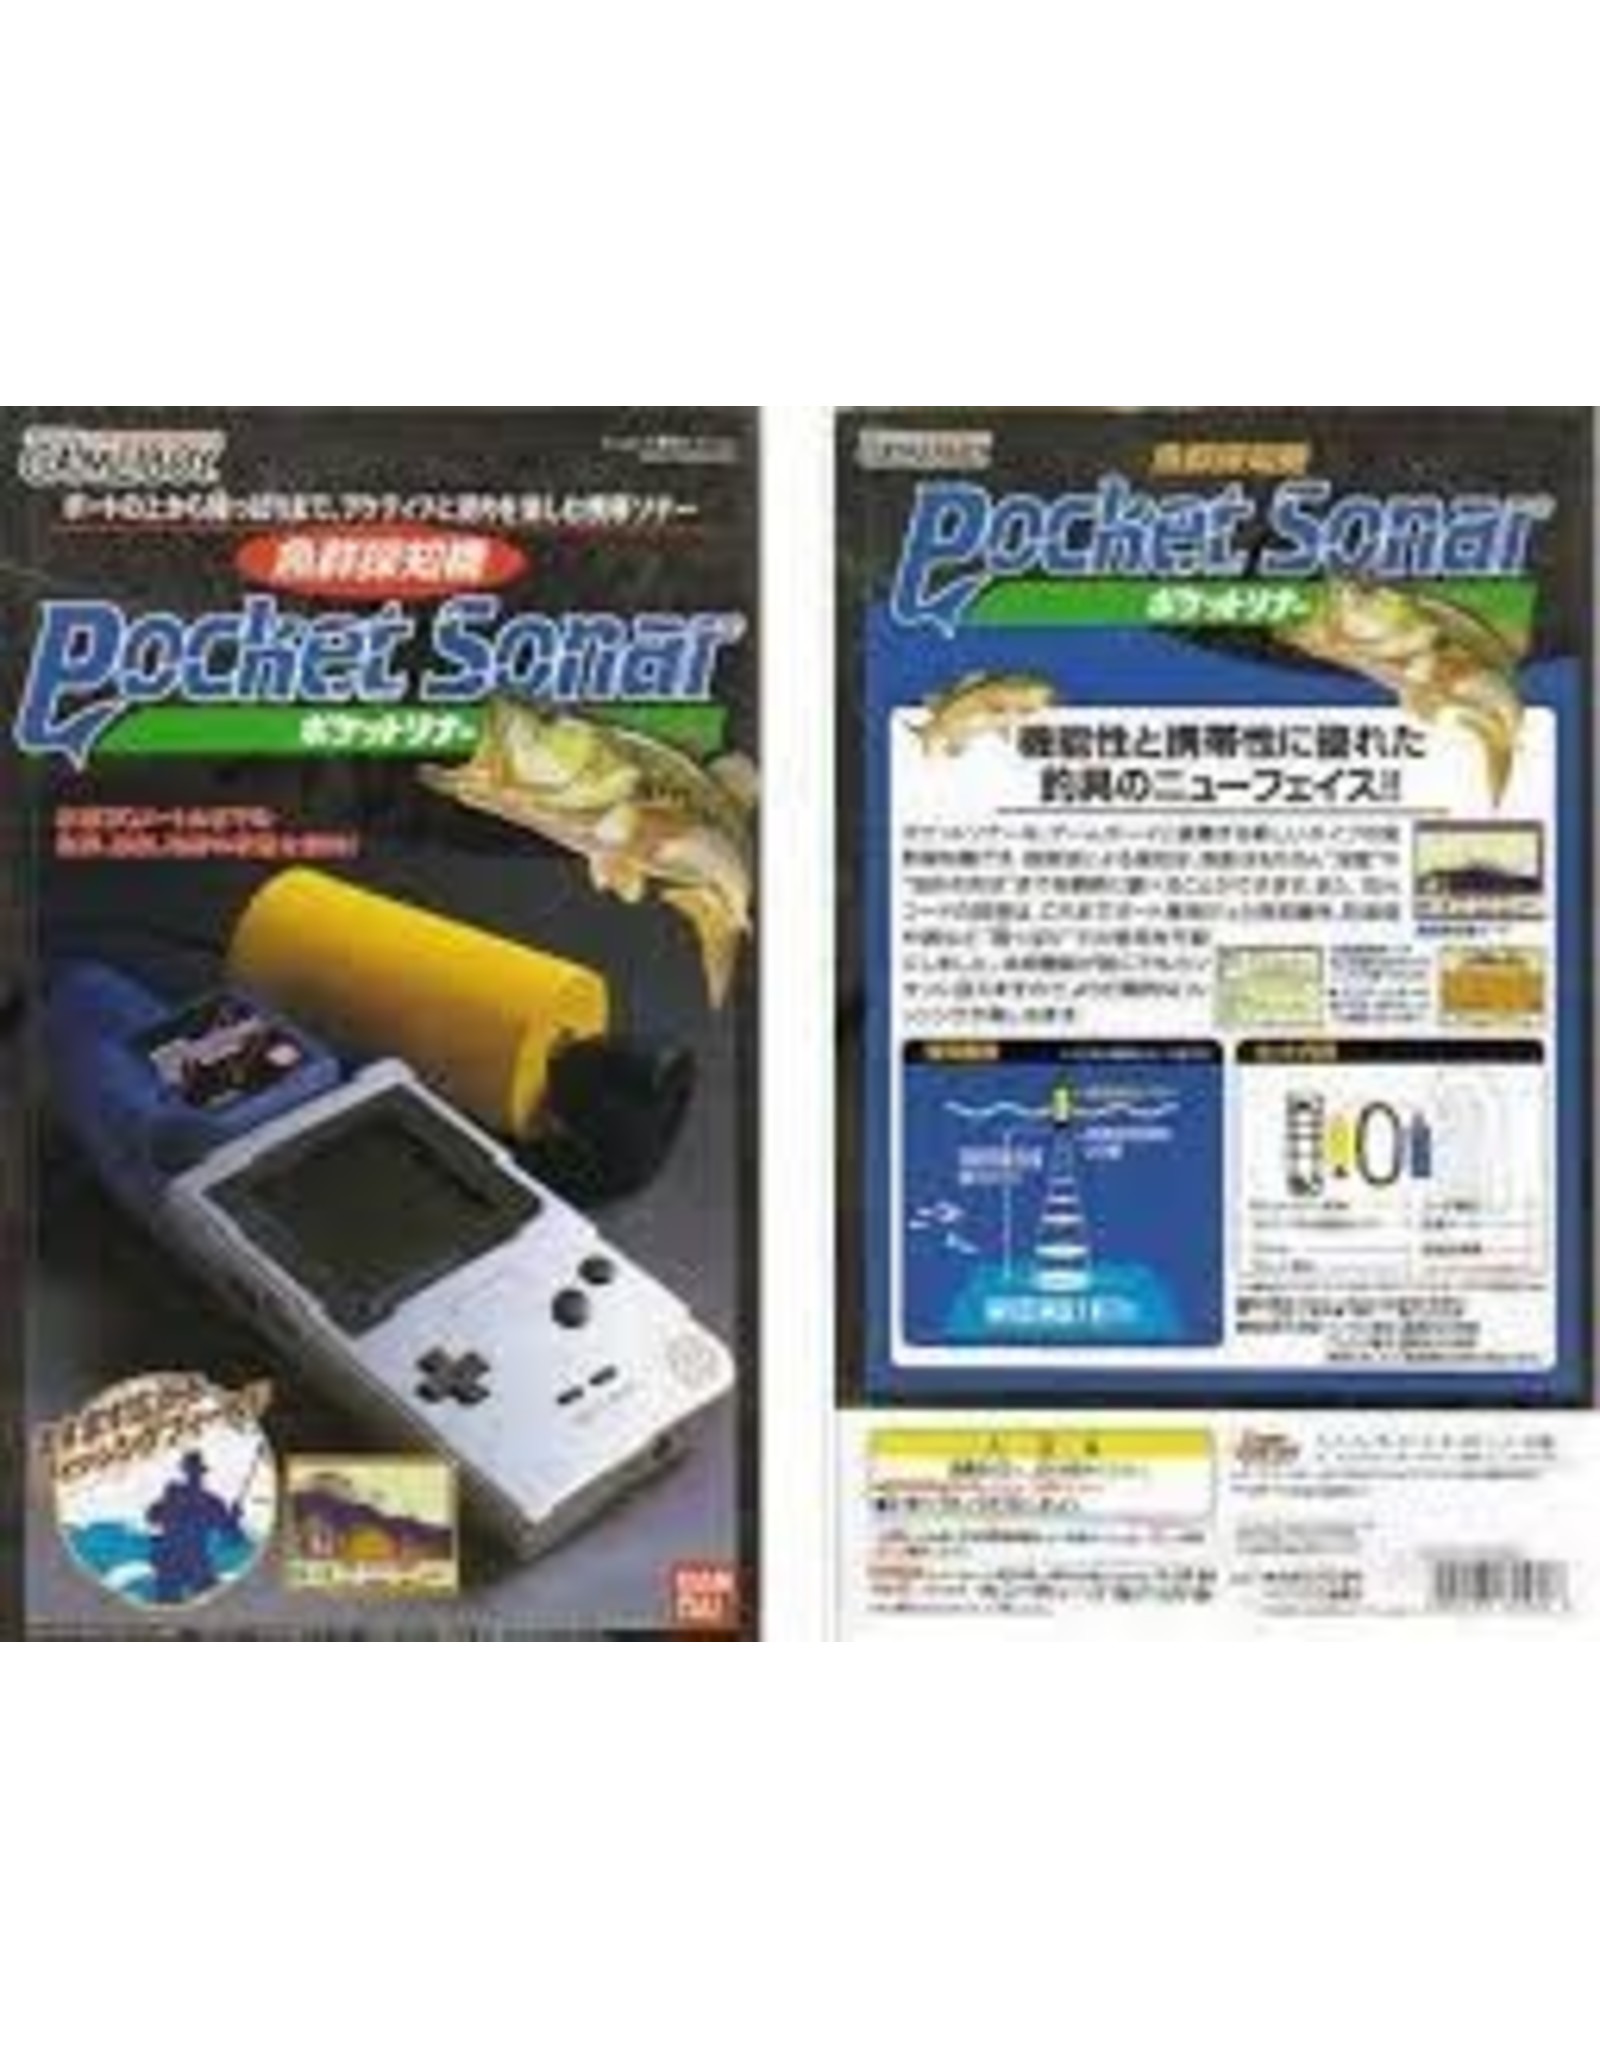 Game Boy Pocket Sonar (CiB)